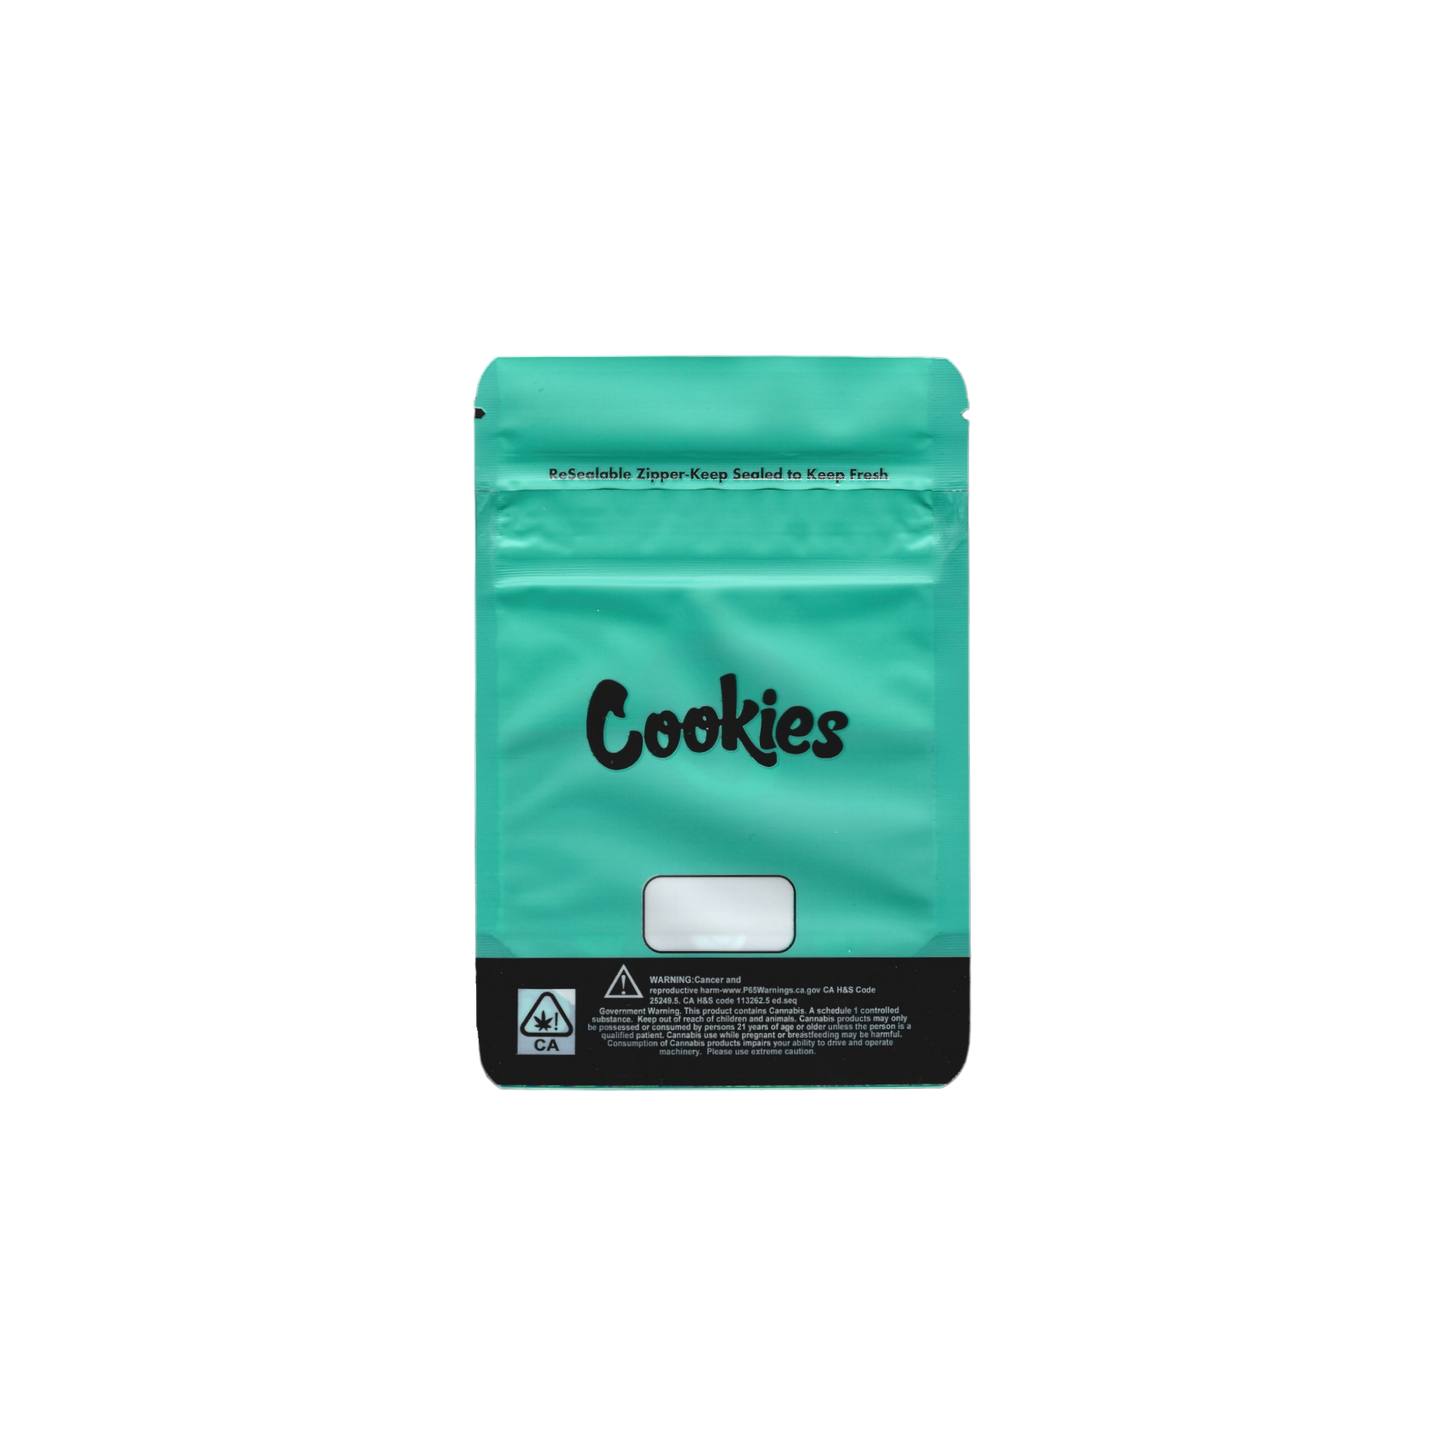 10x Cookies green Mylar Bag 7g - Leer